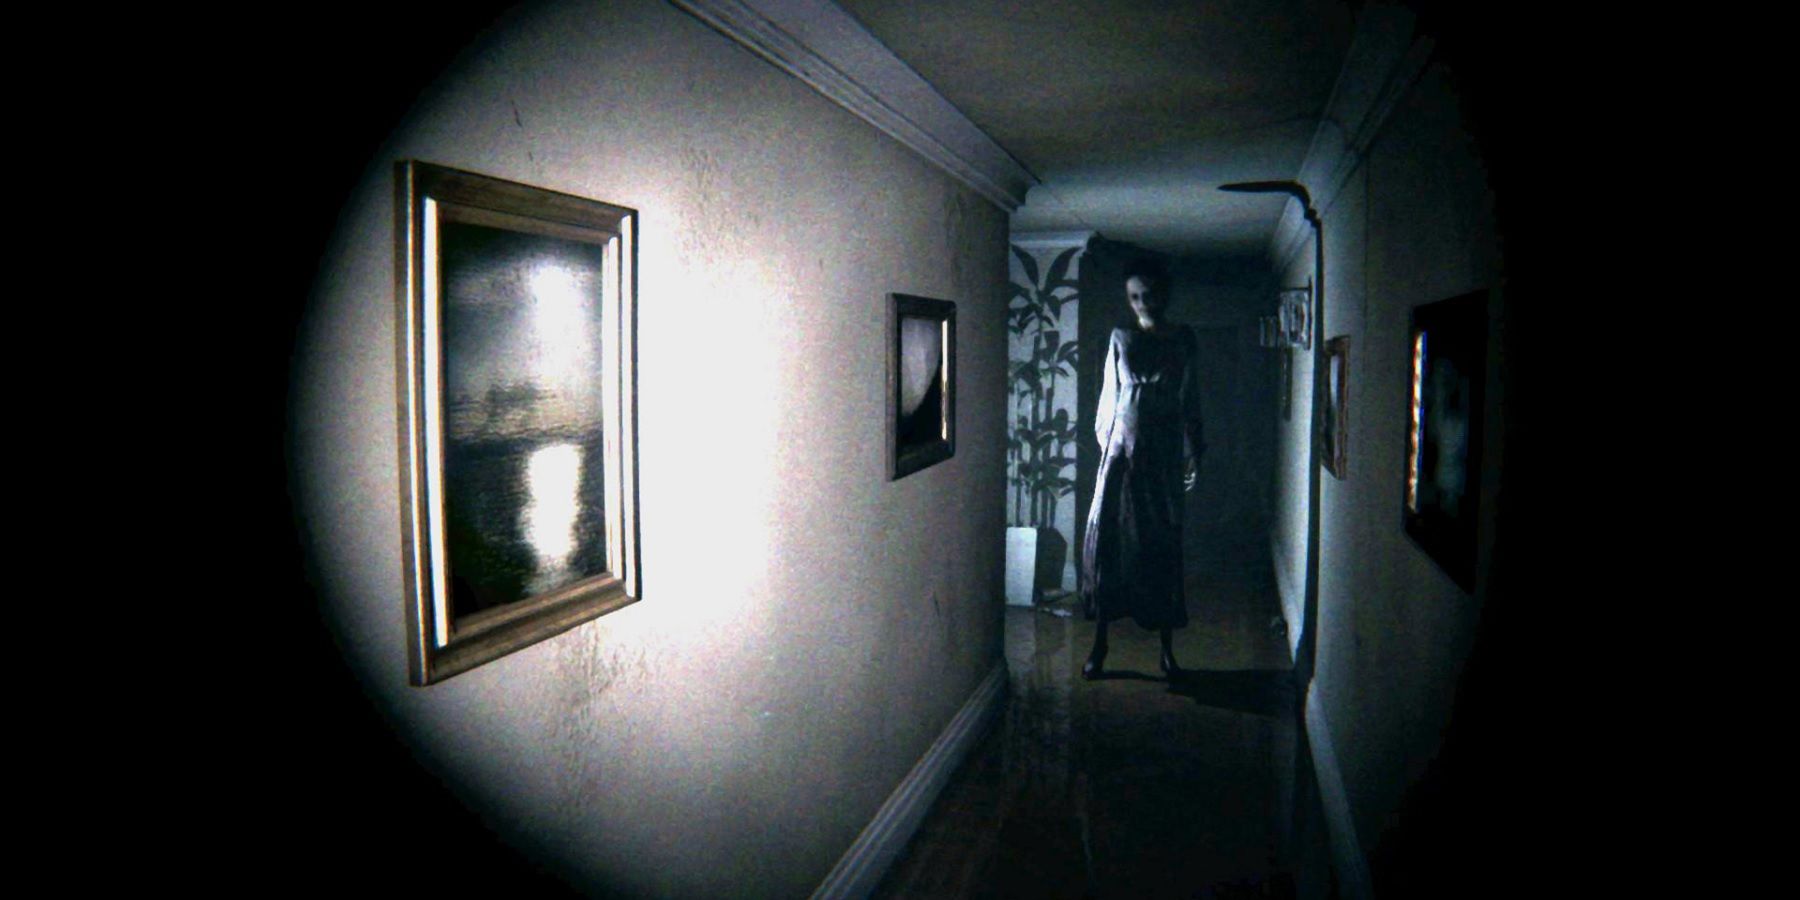 Pletyka: Kojima Silent Hill játékot fejleszt a Sony támogatásával